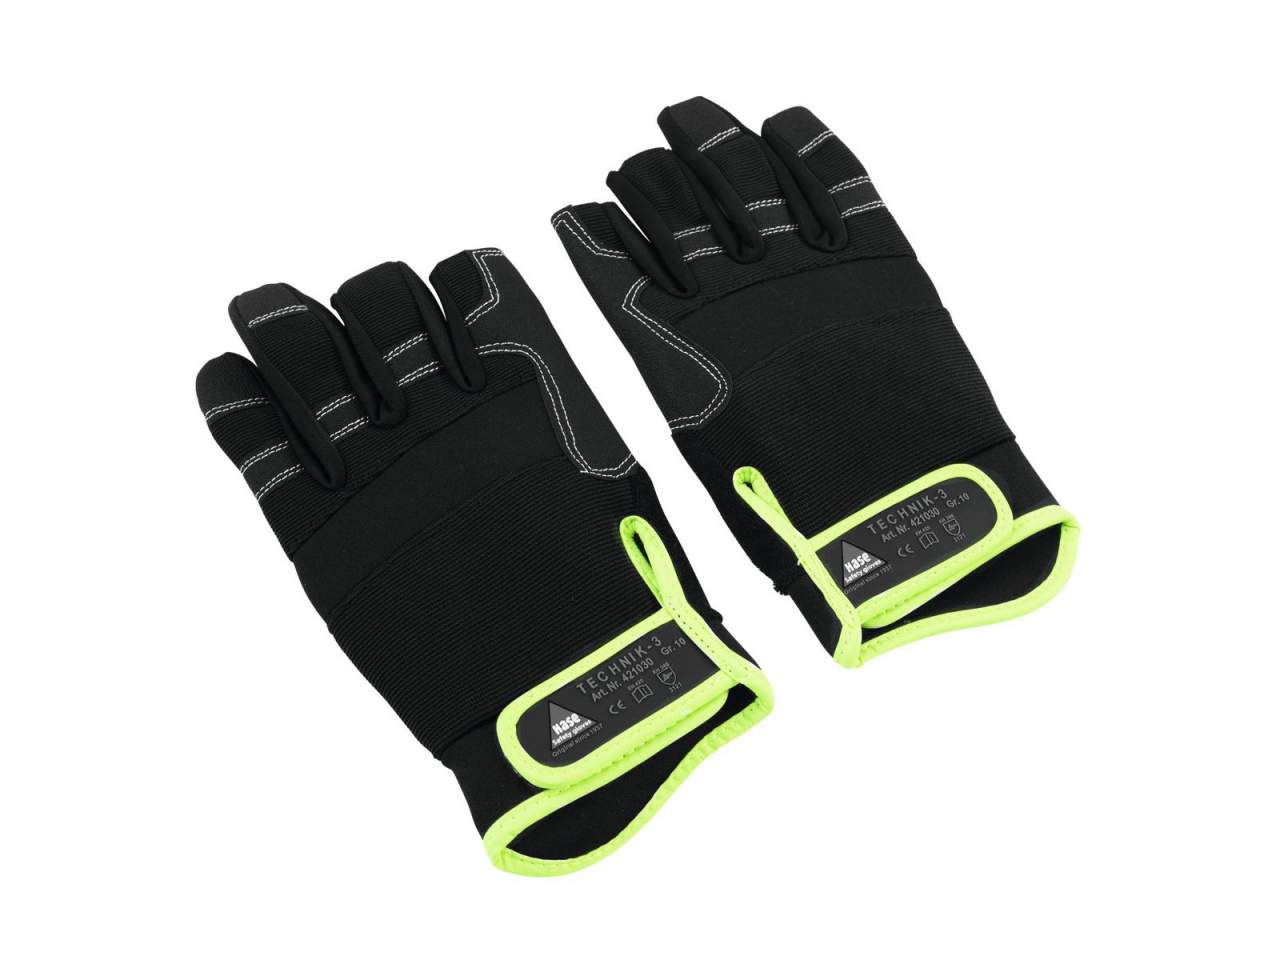 HASE Handschuh 3 Finger- Grsse XL